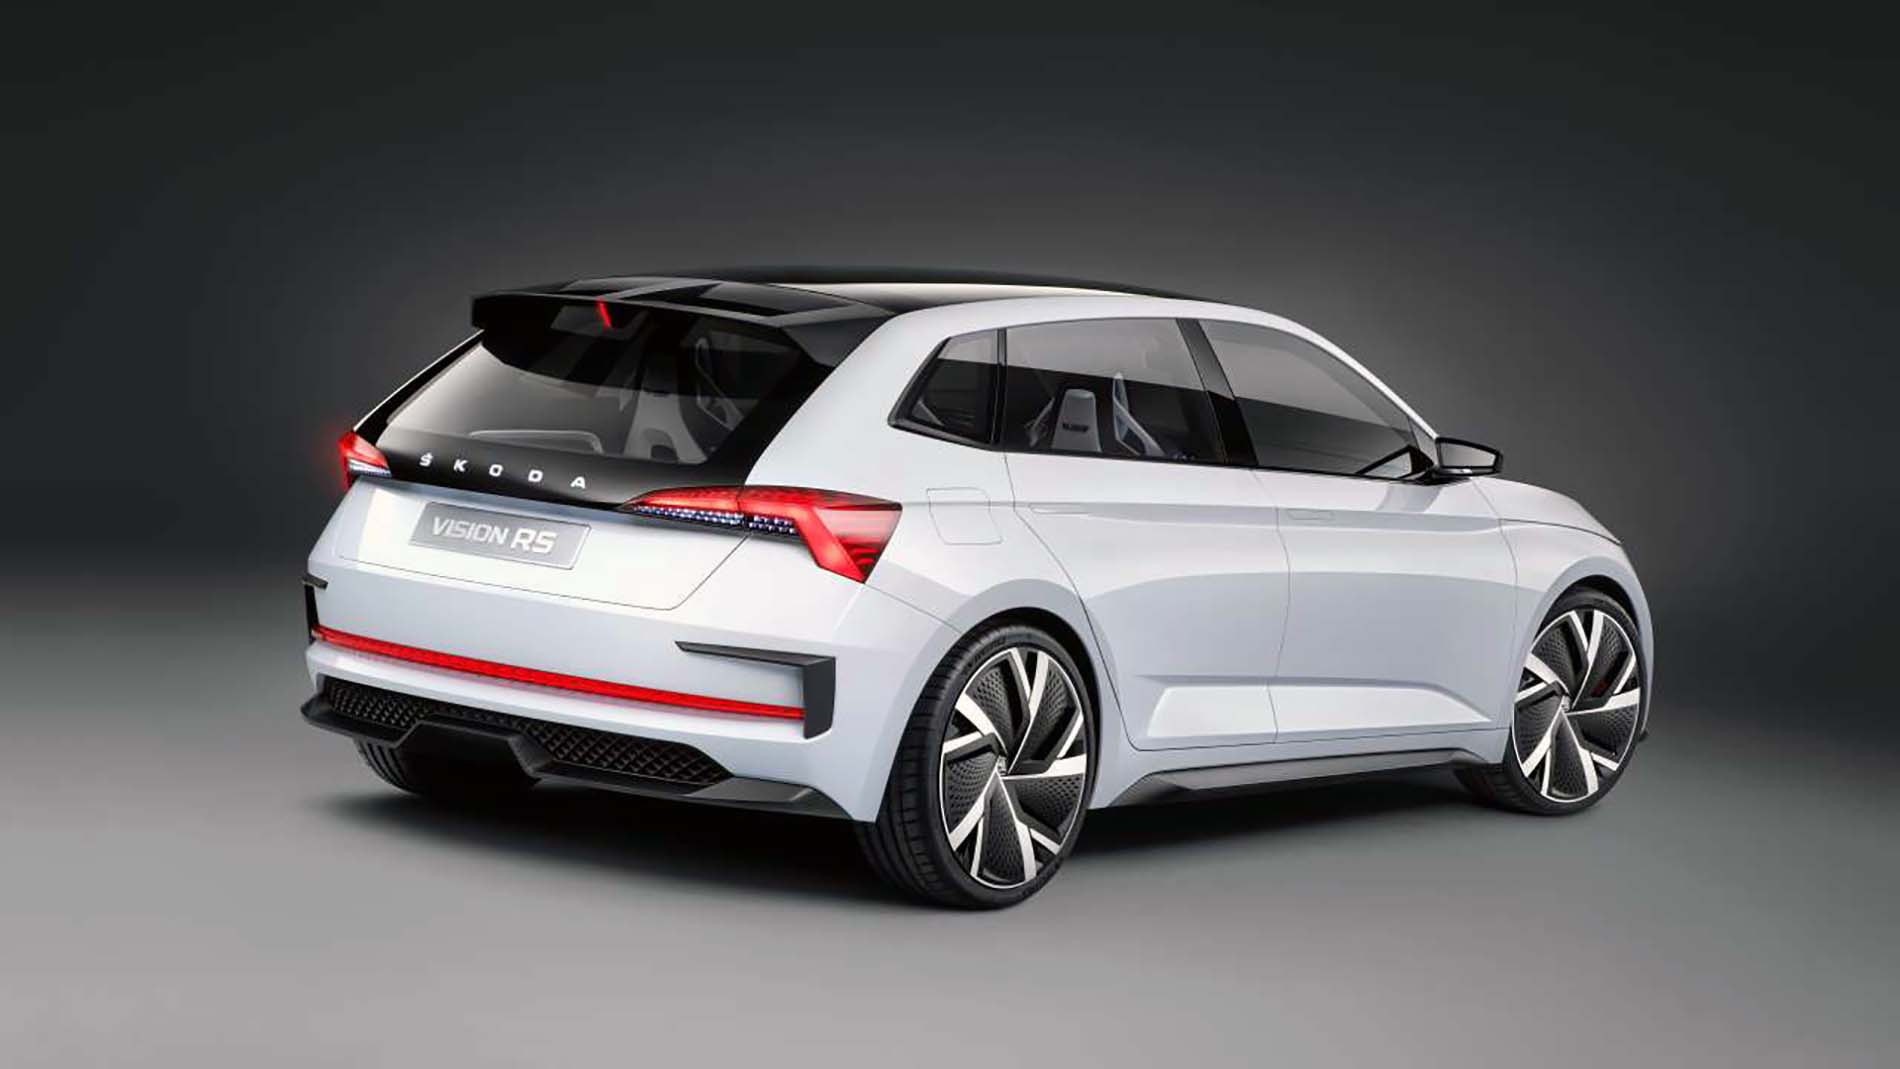 Škoda prezentuje sylwetkę nowego kompaktowego modelu